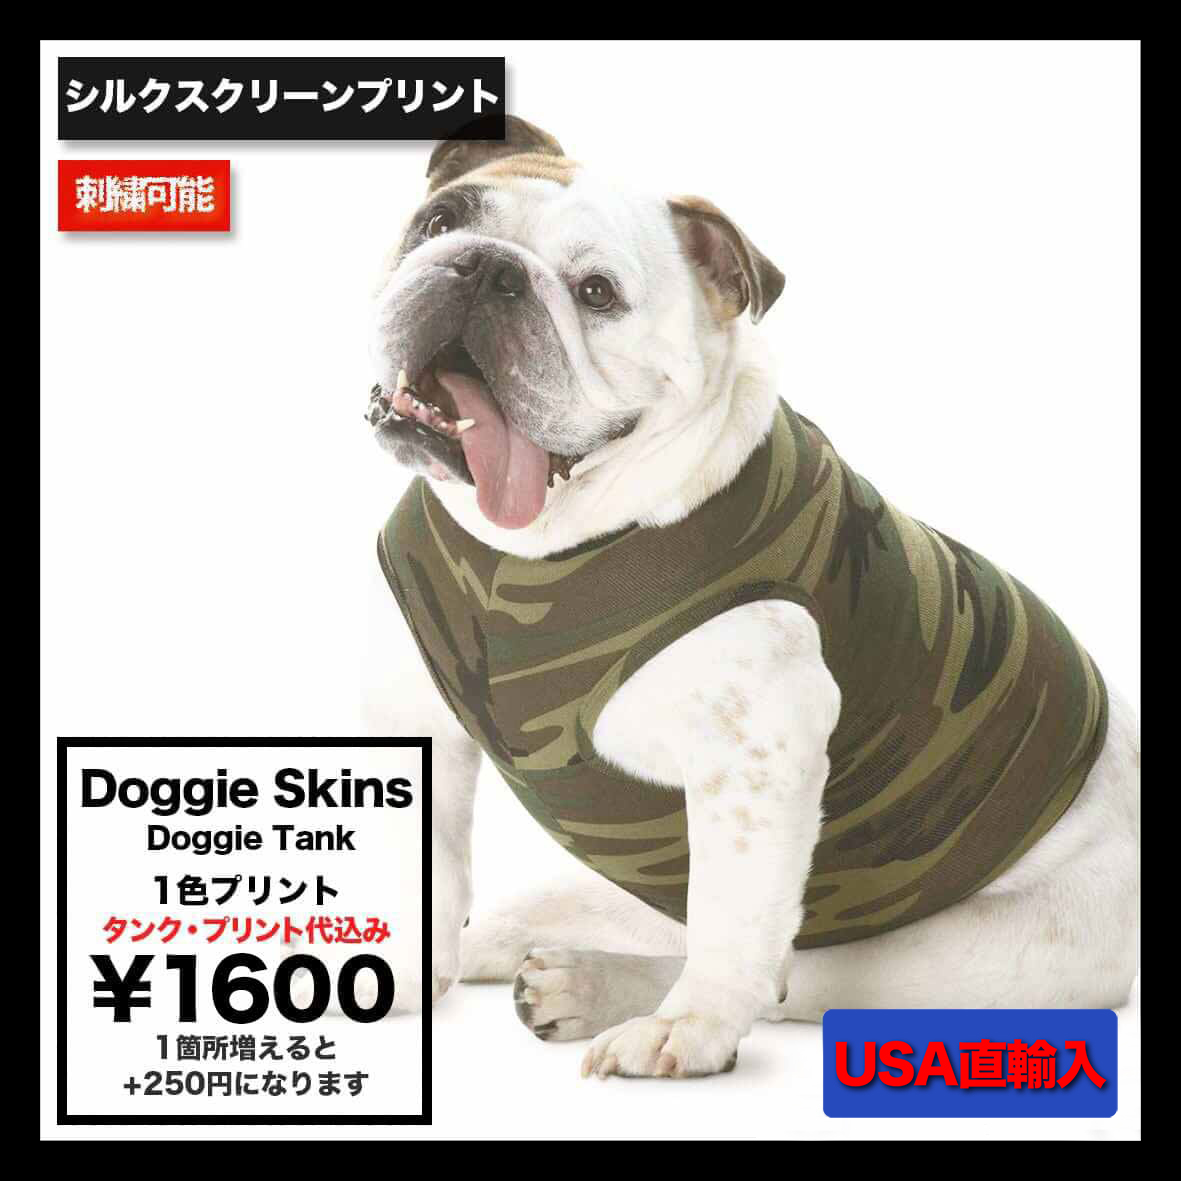 【在庫限り】 Doggie Skins ドギースキンズ Doggie Tank (品番3902US)